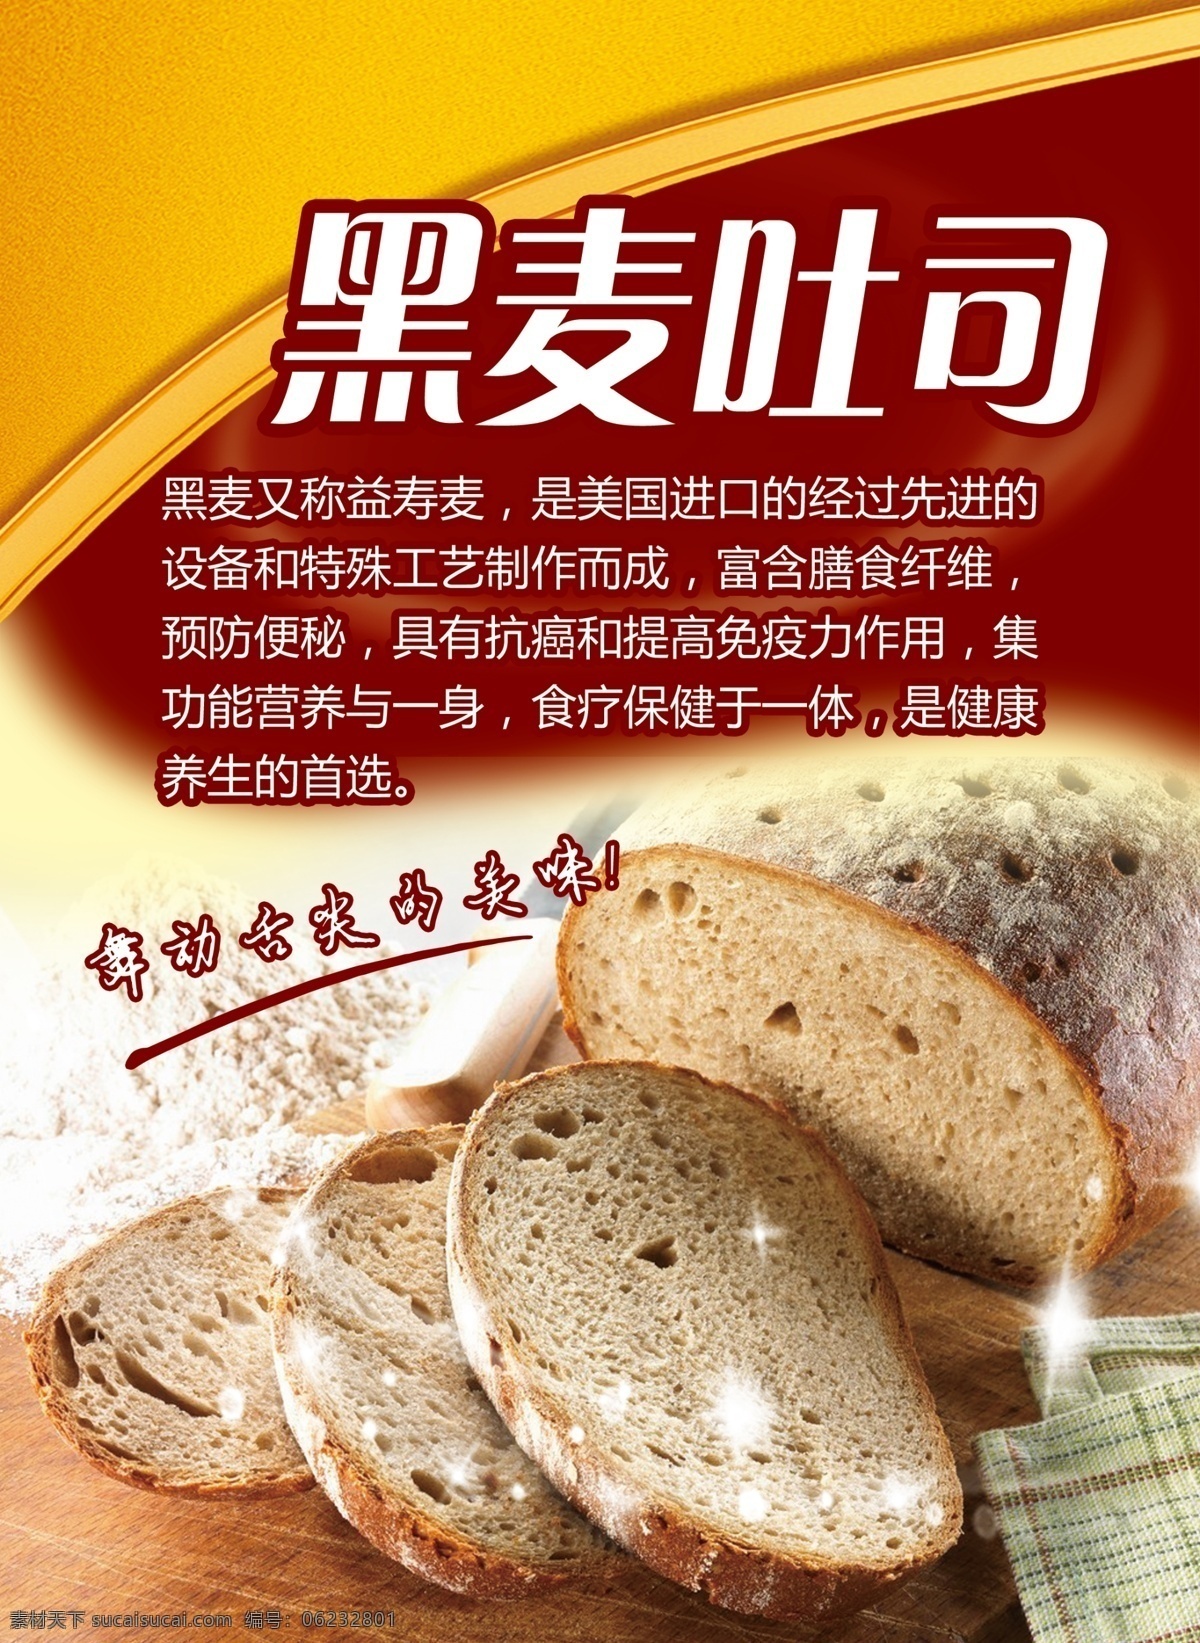 黑麦 吐司 海报 宣传海报 吐司面包 黑麦吐司 面包宣传 原创设计 原创海报